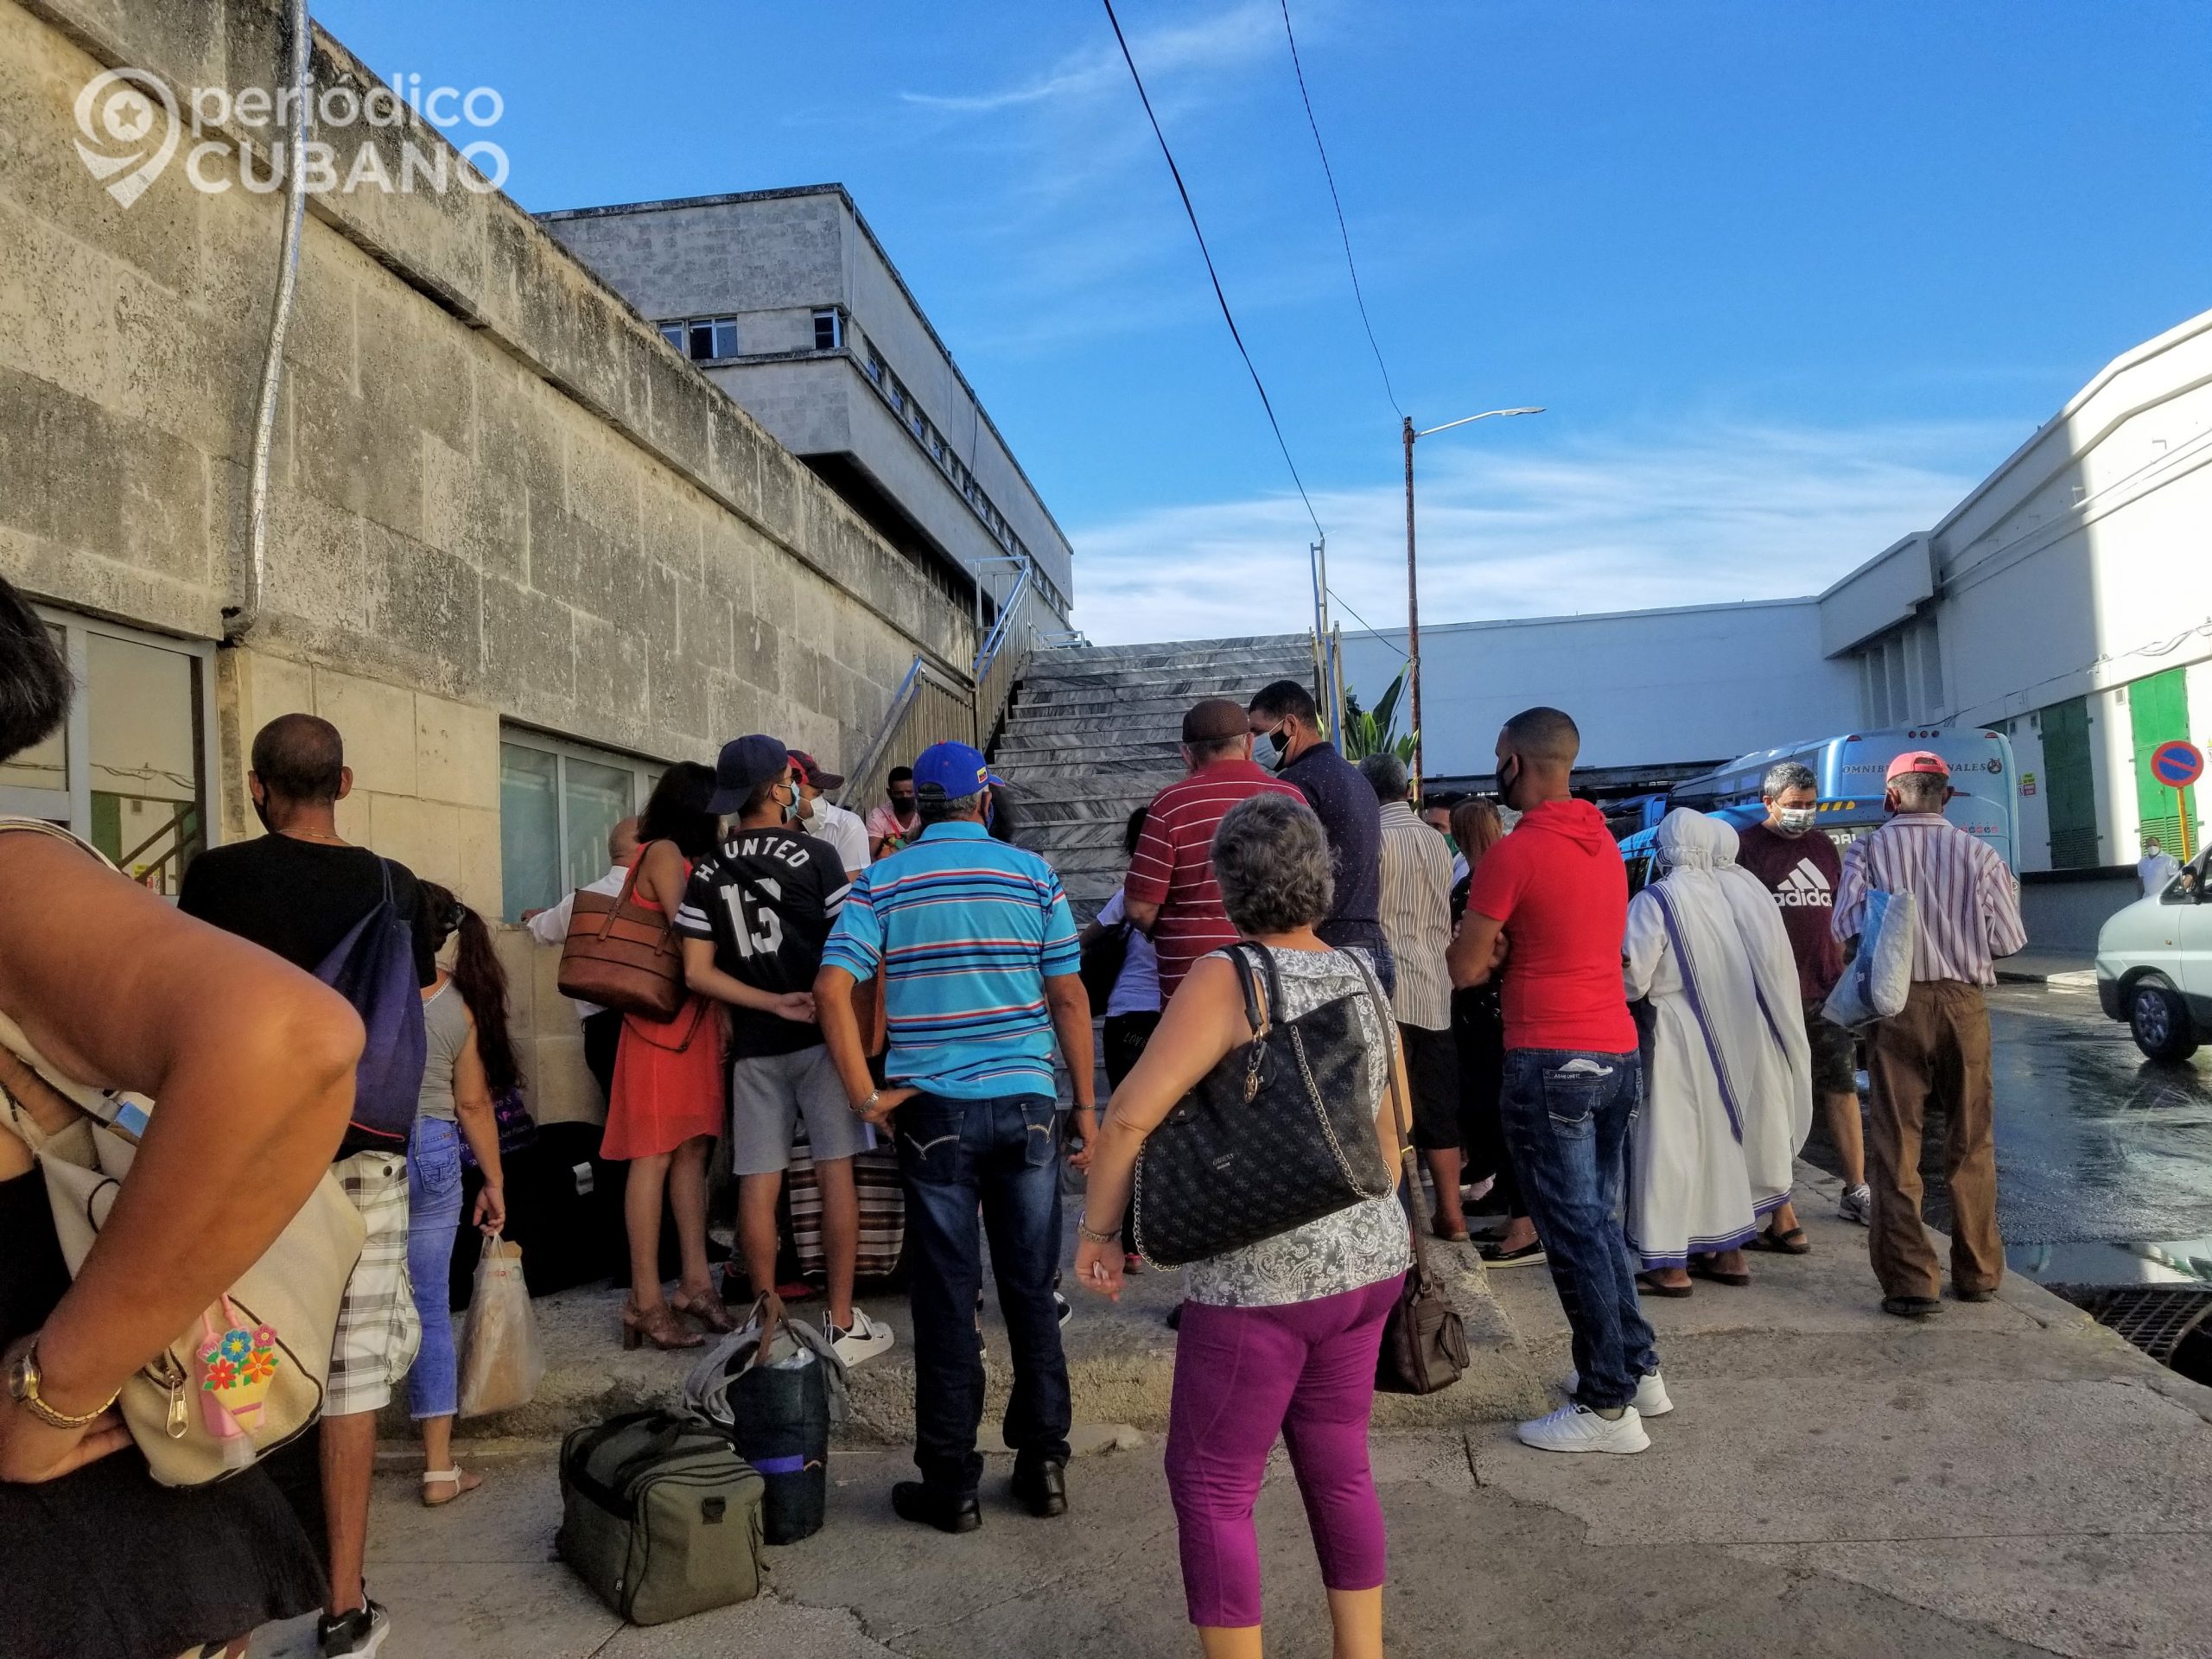 Reparten 120.000 euros entre españoles de Castilla y León que viven en Cuba bajo “situación de especial necesidad”